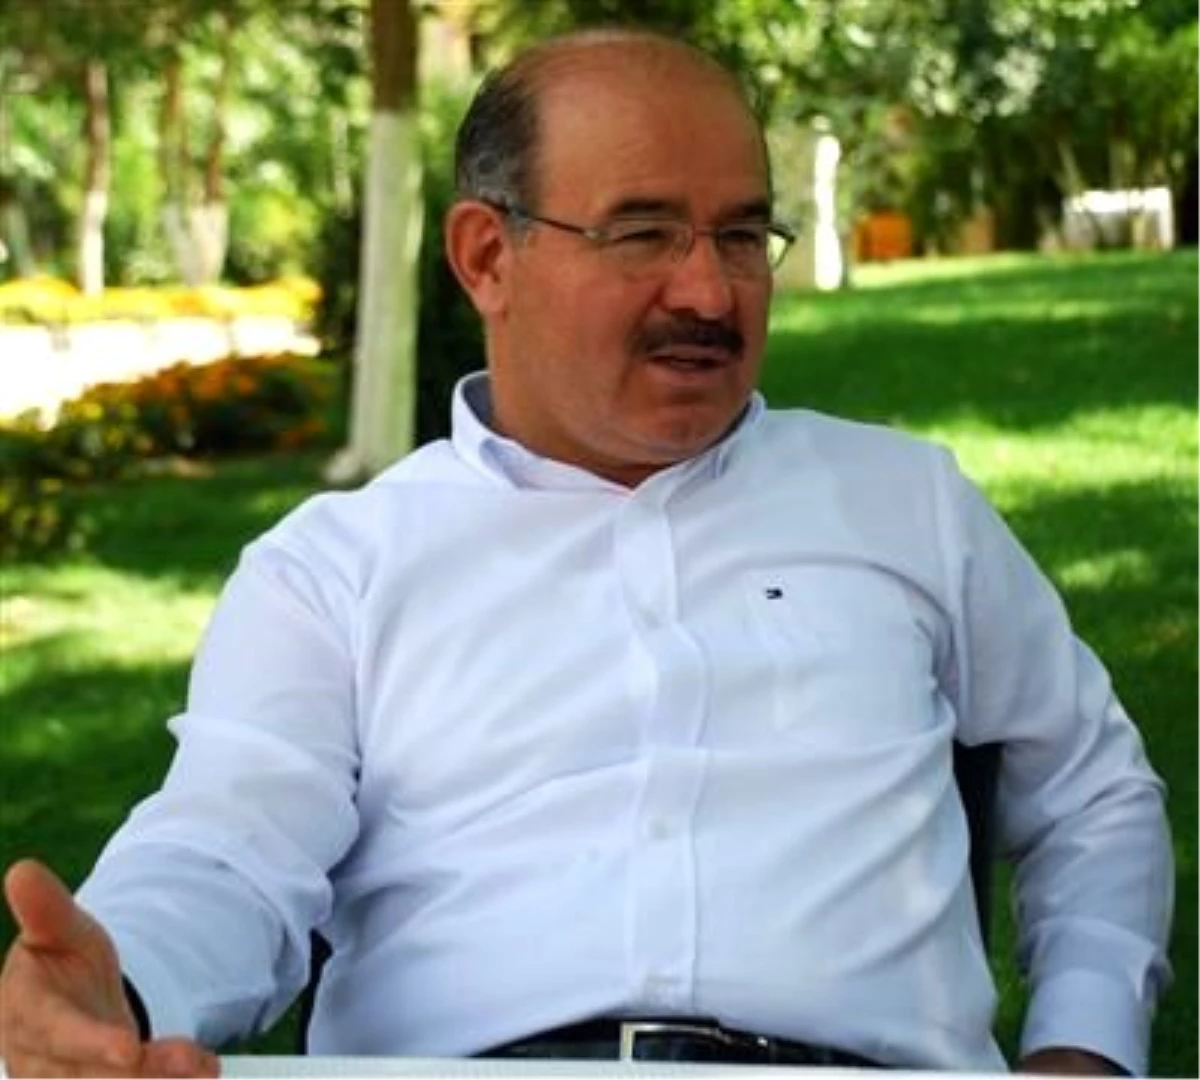 AK Parti Genel Başkan Yardımcısı Çelik Açıklaması